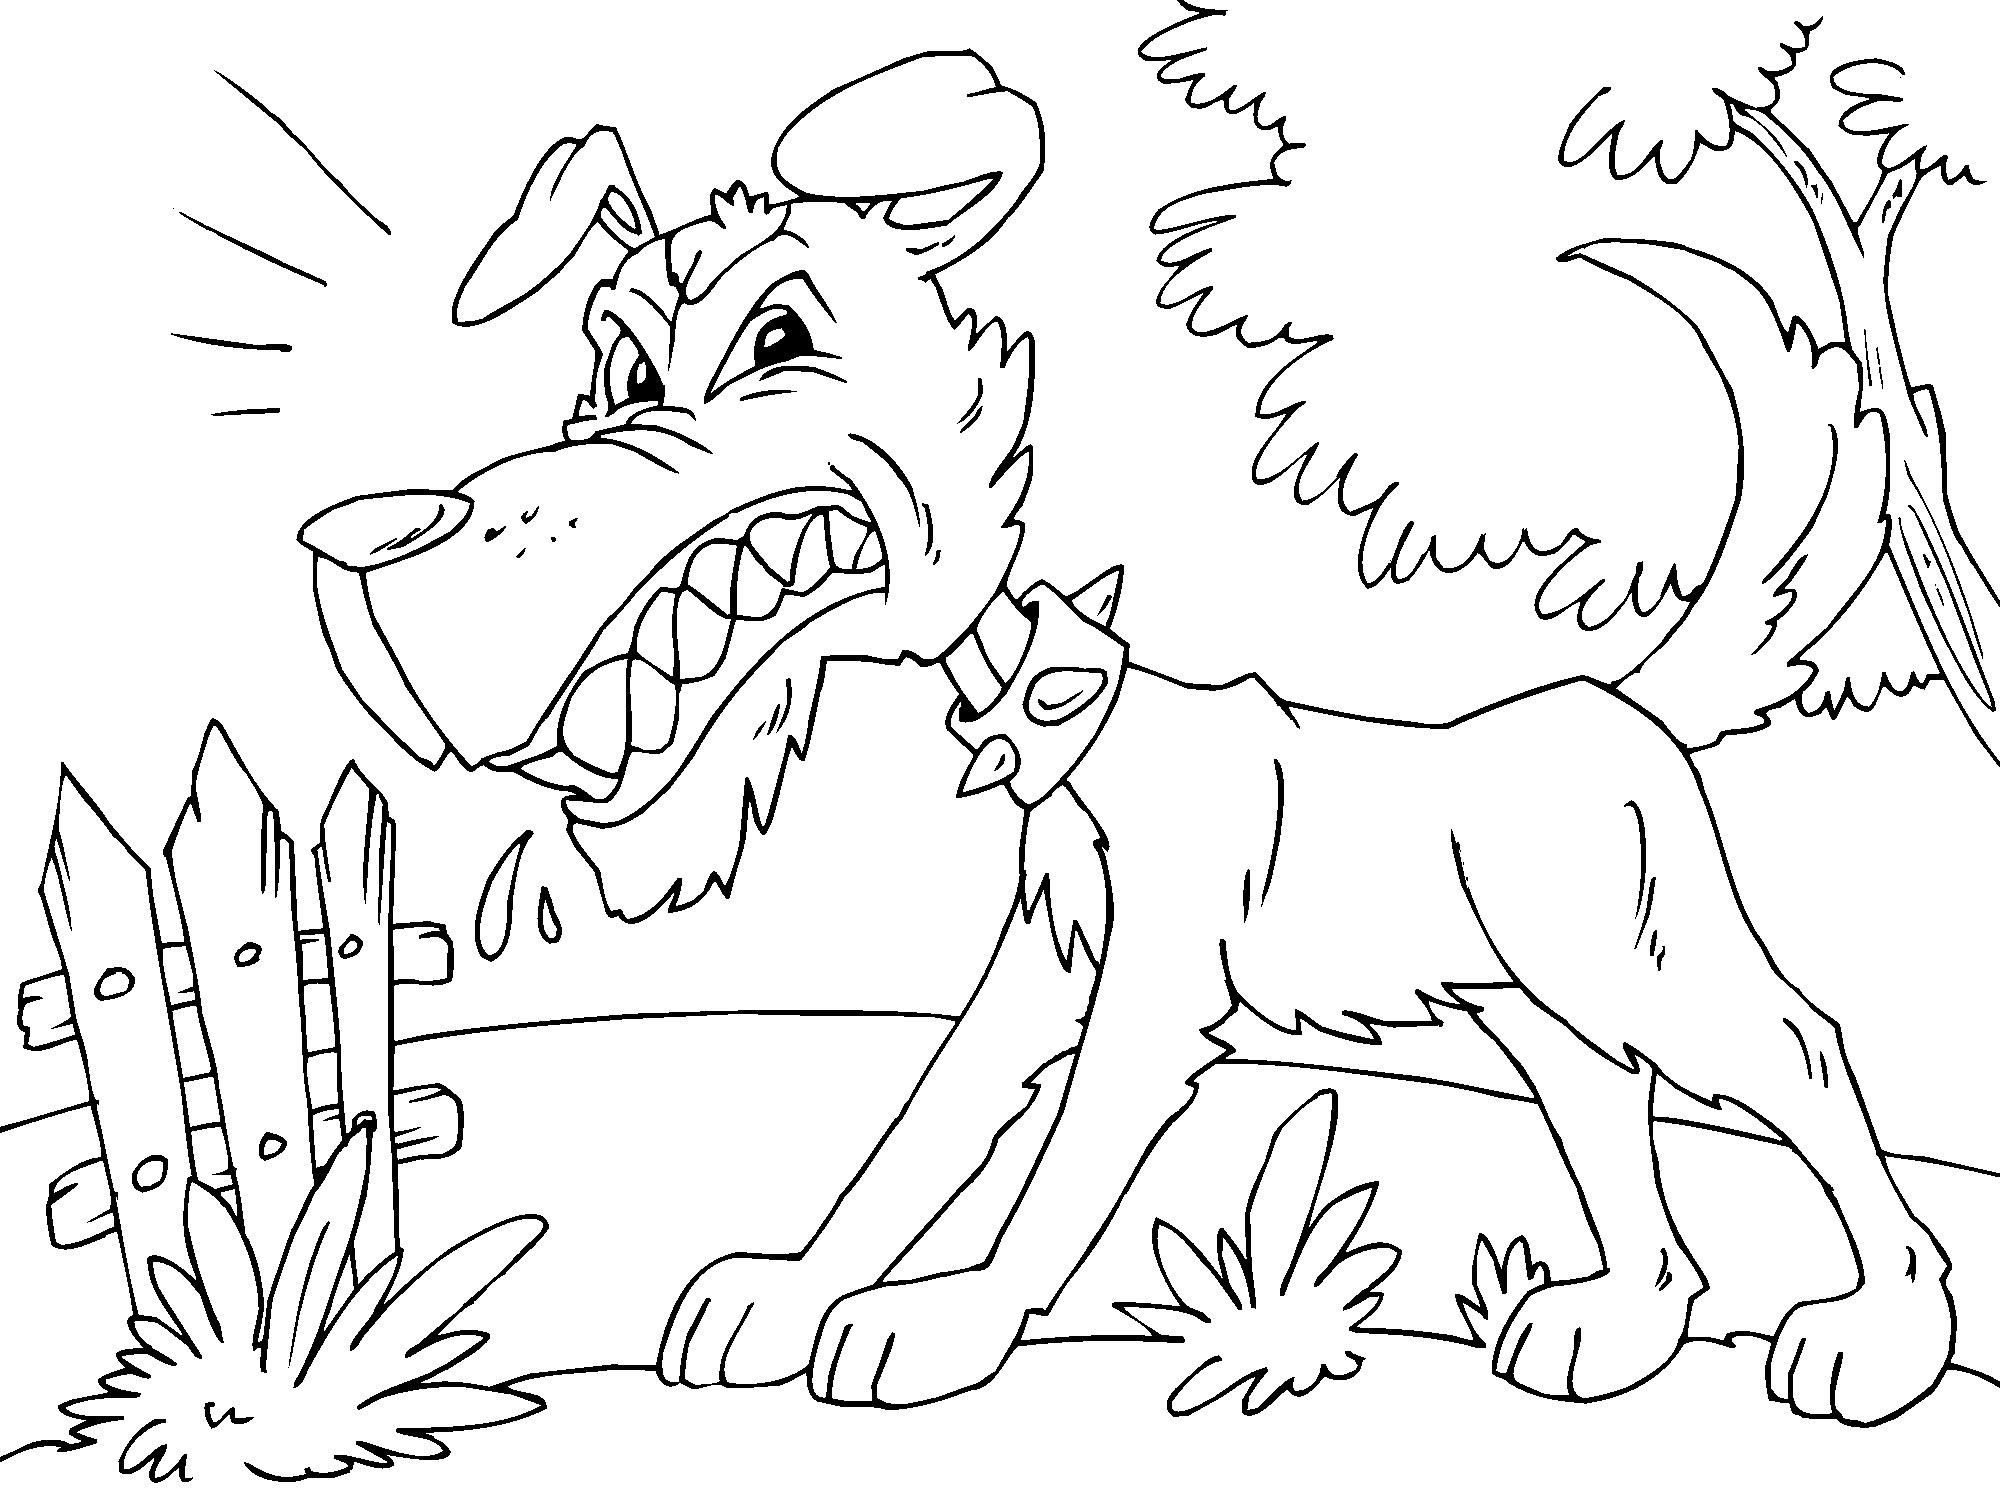 Disegno da colorare di cane arrabbiato stile cartone animato per bambini 